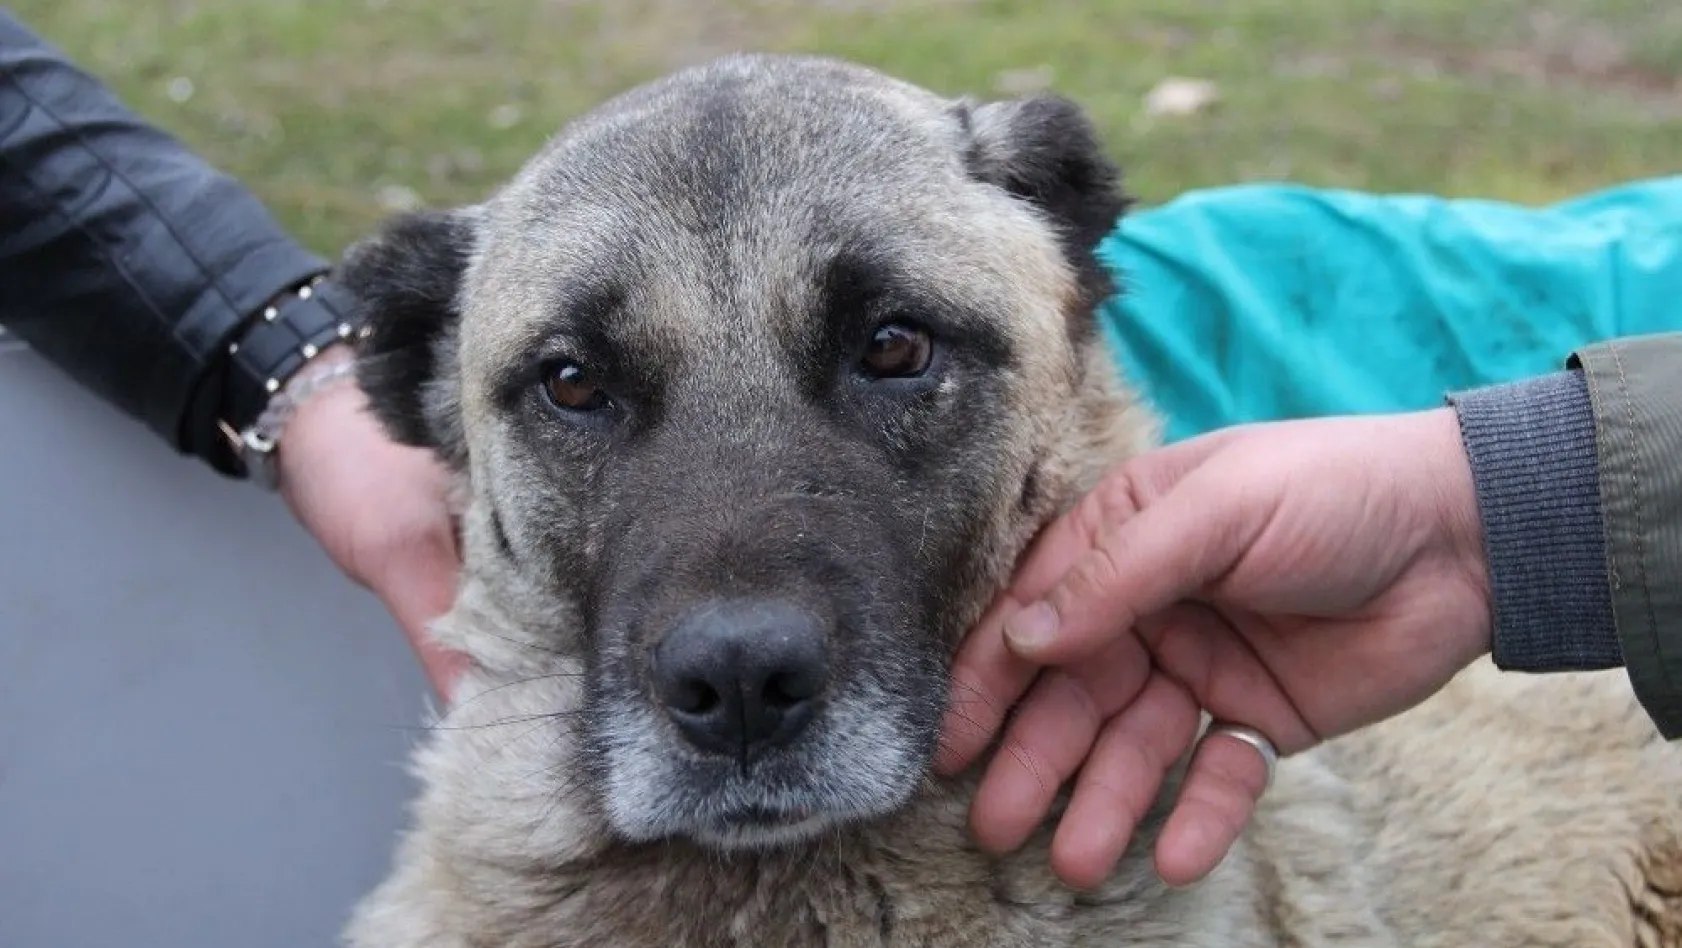 Sivas'ta tedavi için uçakla İstanbul'a taşınan yaralı köpek kurtarılamadı
